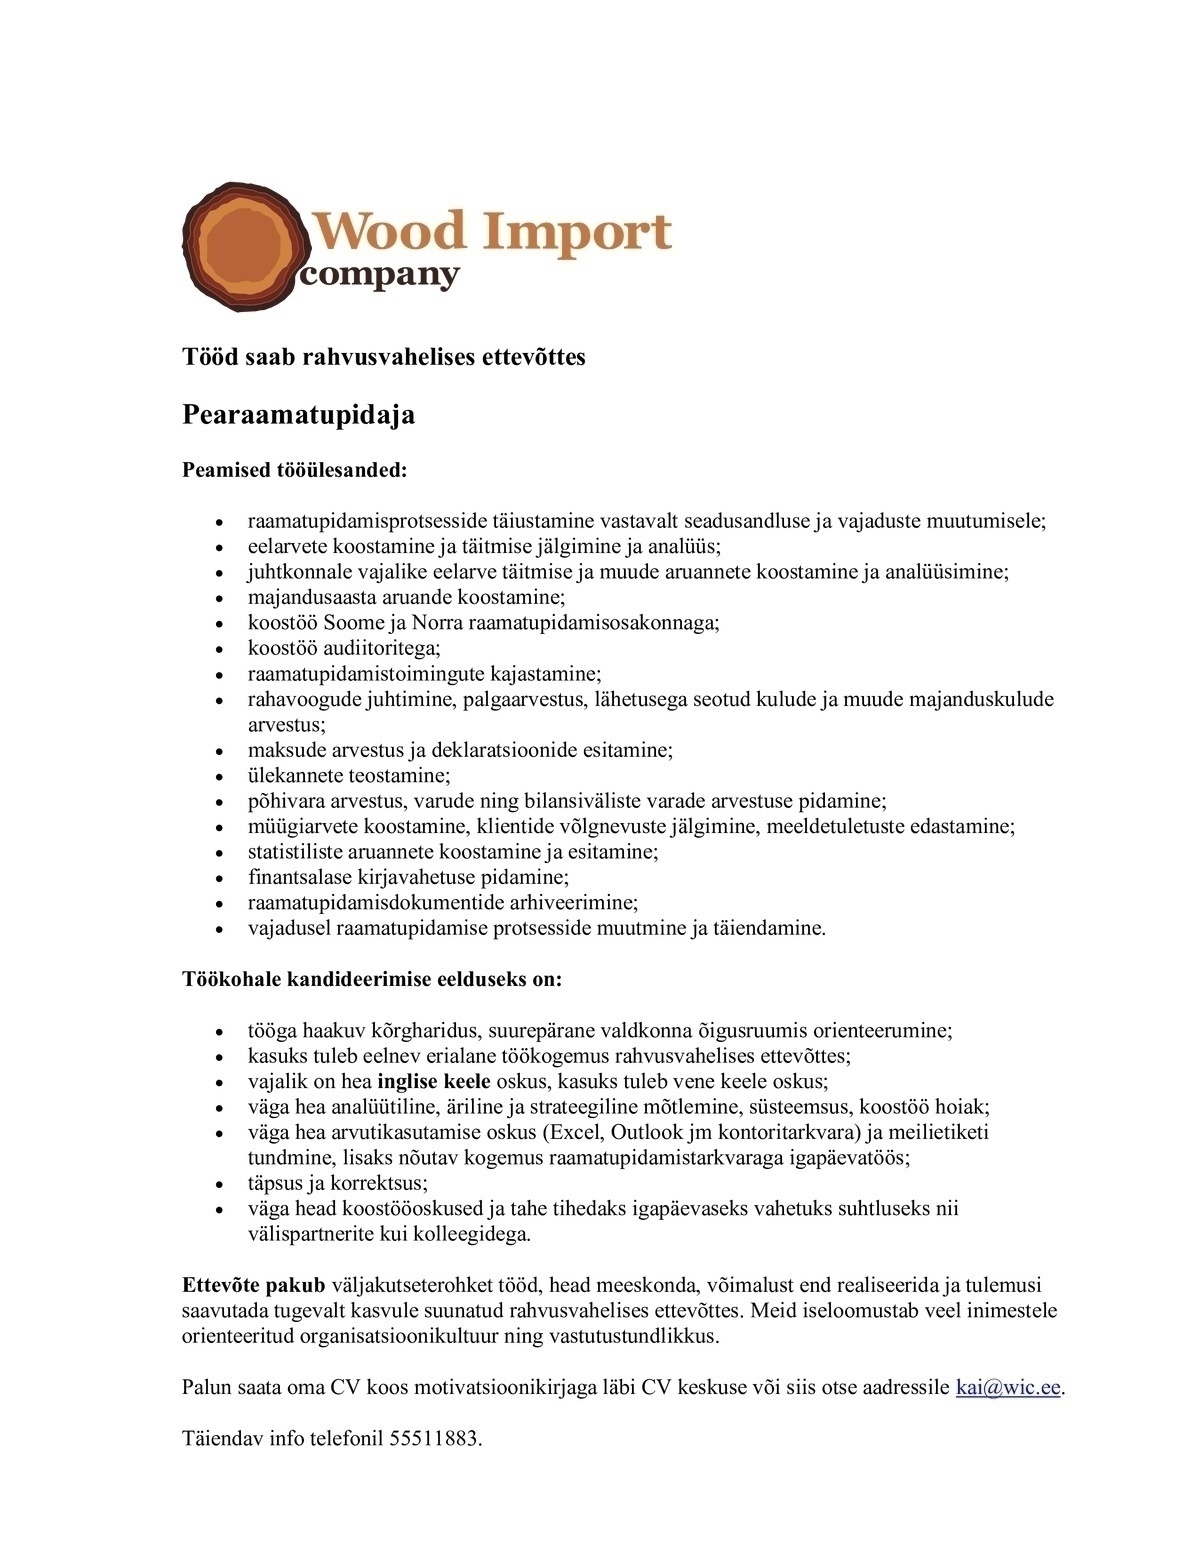 Wood Import Company OÜ Pearaamatupidaja